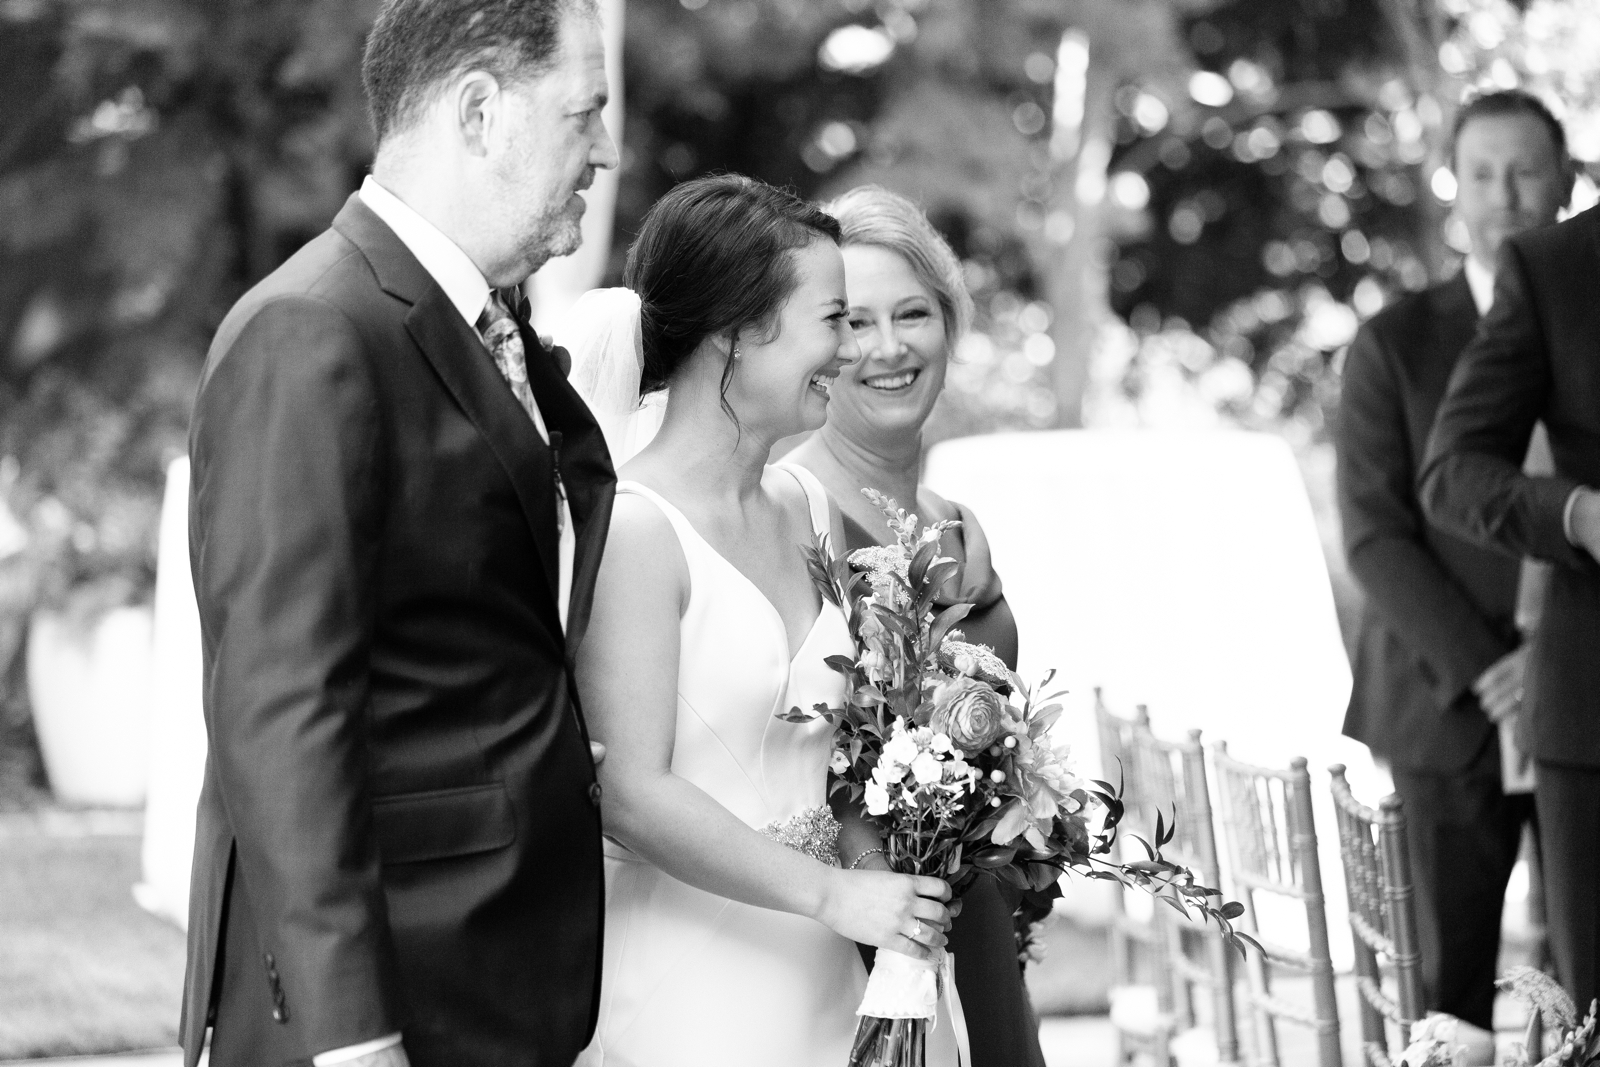 Trolley Barn Wedding - Sydney Bruton Photography